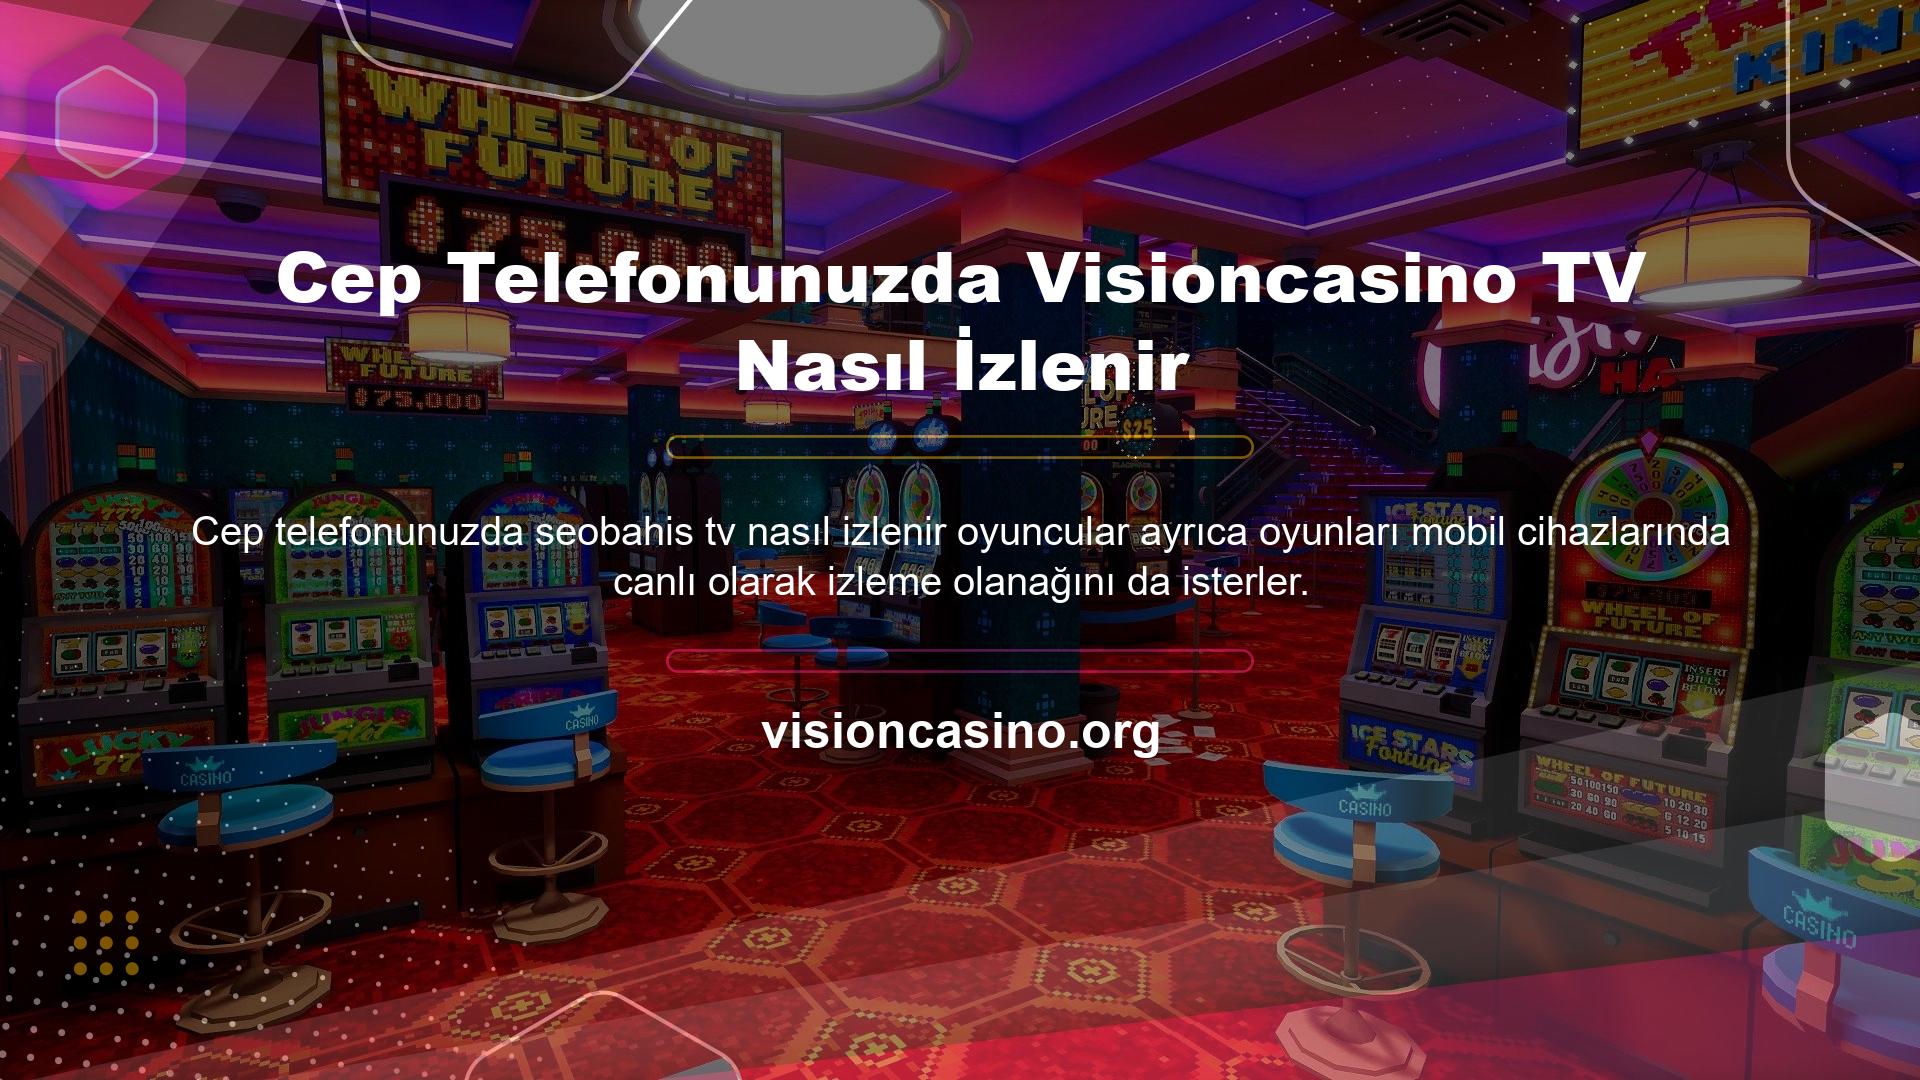 Oyun dünyasında Visioncasino giriş bunu destekleyen en iyi sitelerden biridir